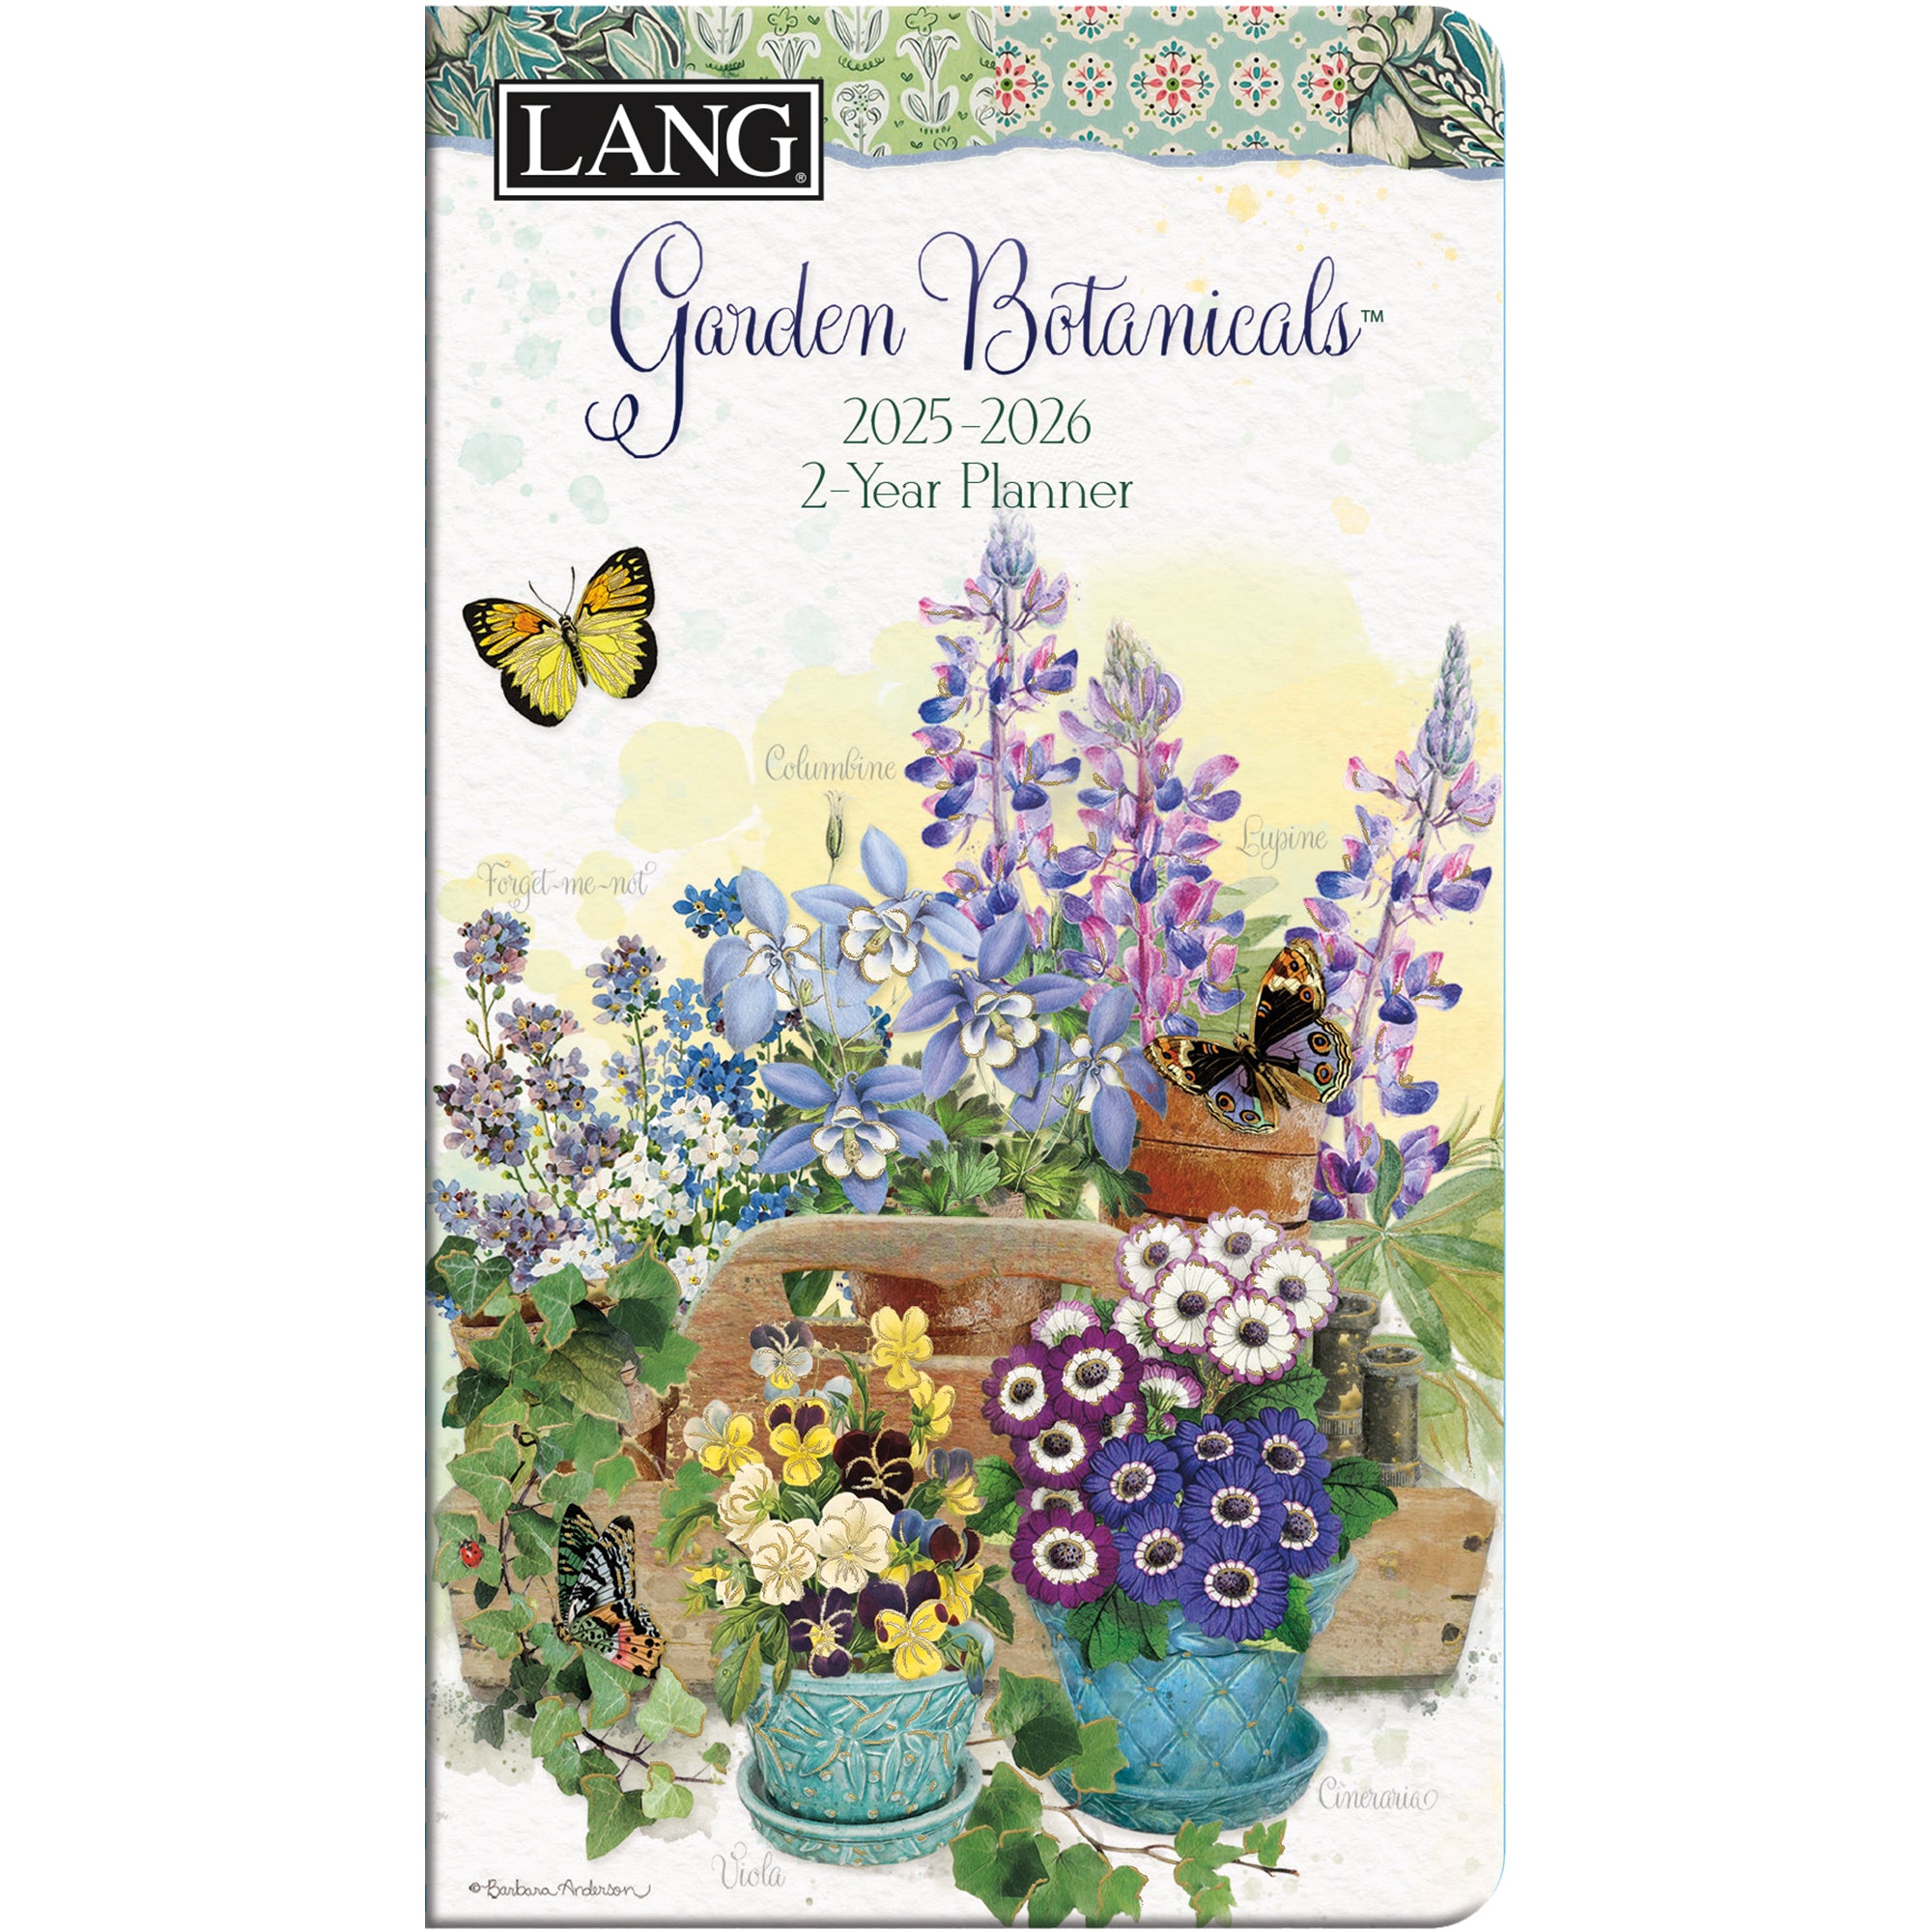 2025-2026 Garden Botanicals - LANG 2 Year Pocket Diary/Planner